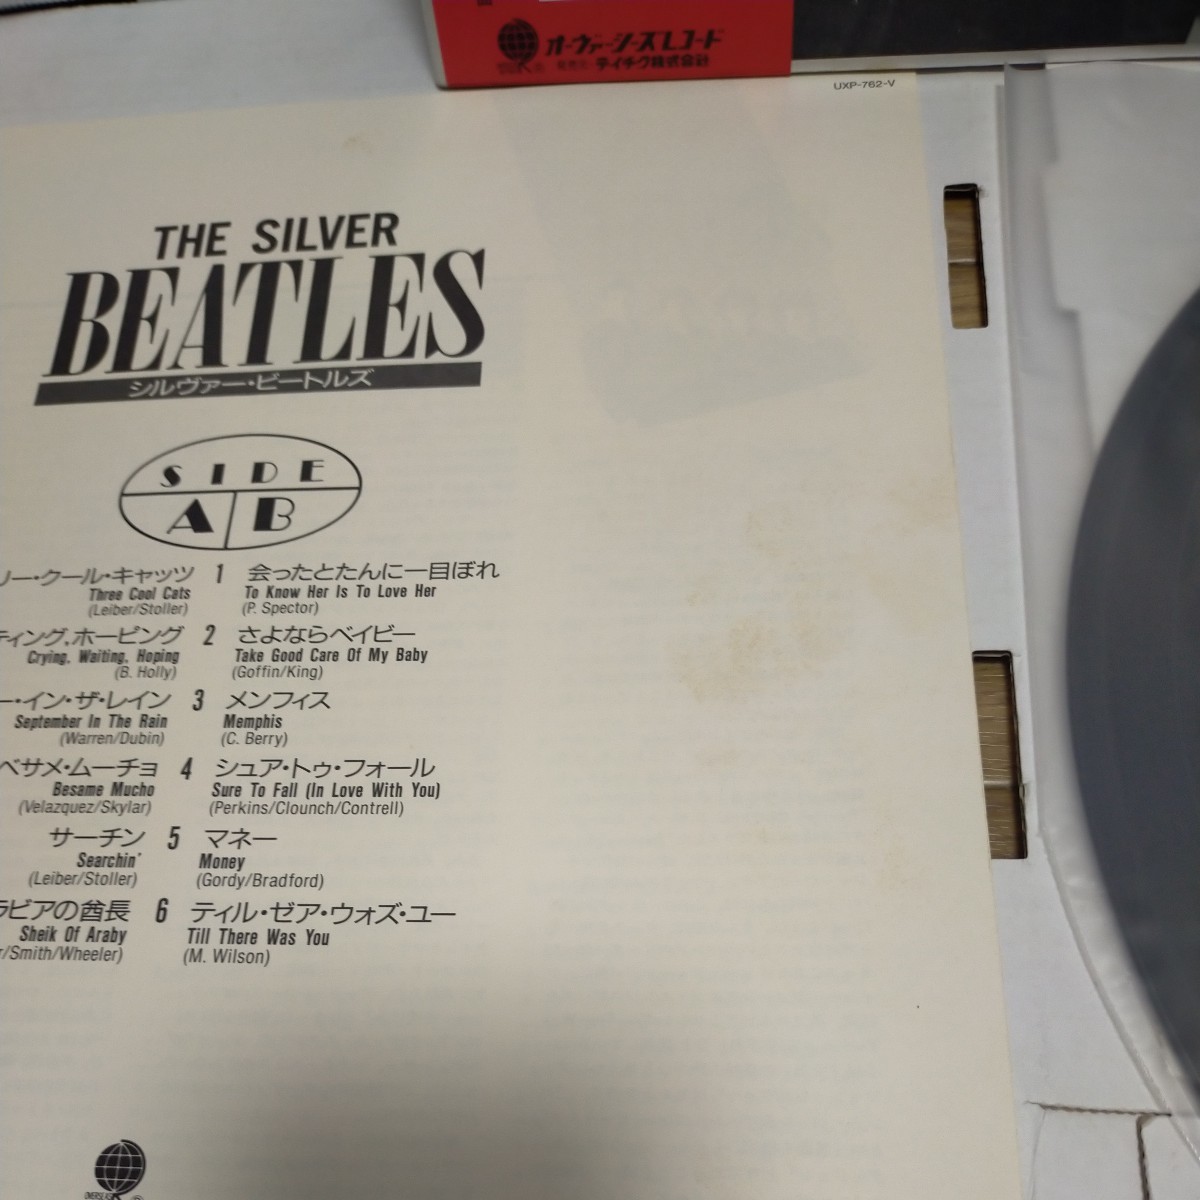 帯付 7′EP付 美盤LP/THE BEATLES ビートルズ/THE SILVER BEATLES シルヴァー・ビートルズ/UXP-762-V mono盤 John Lennon George Harrison_画像9